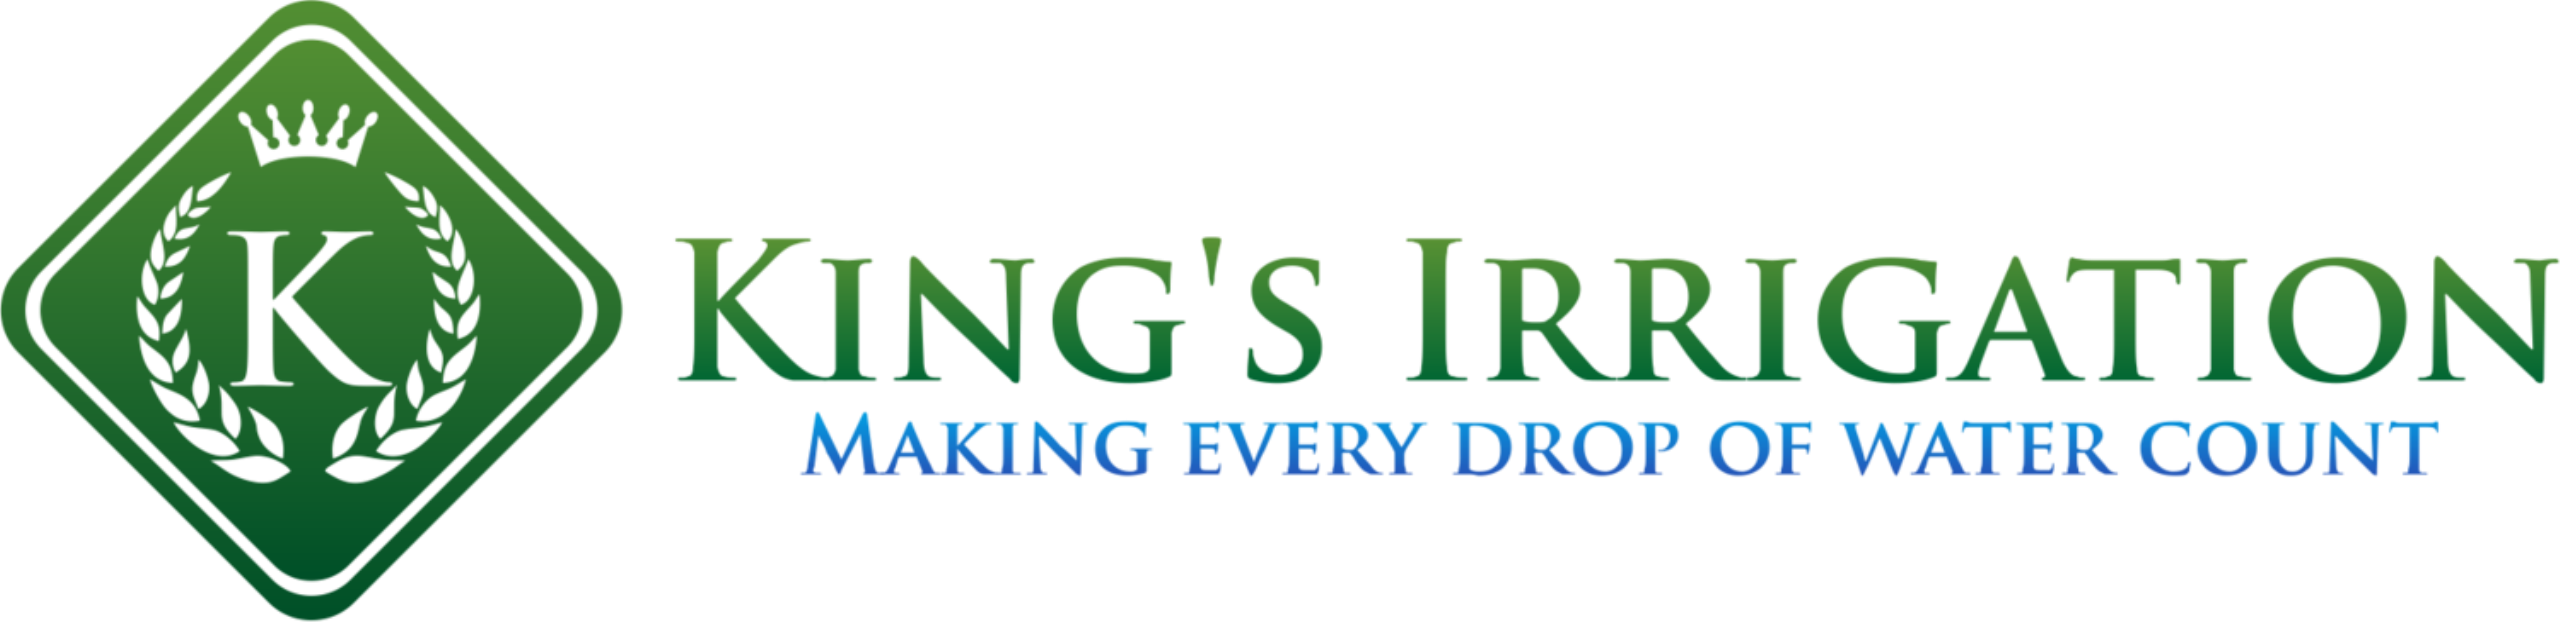 King's Irrigation Logo